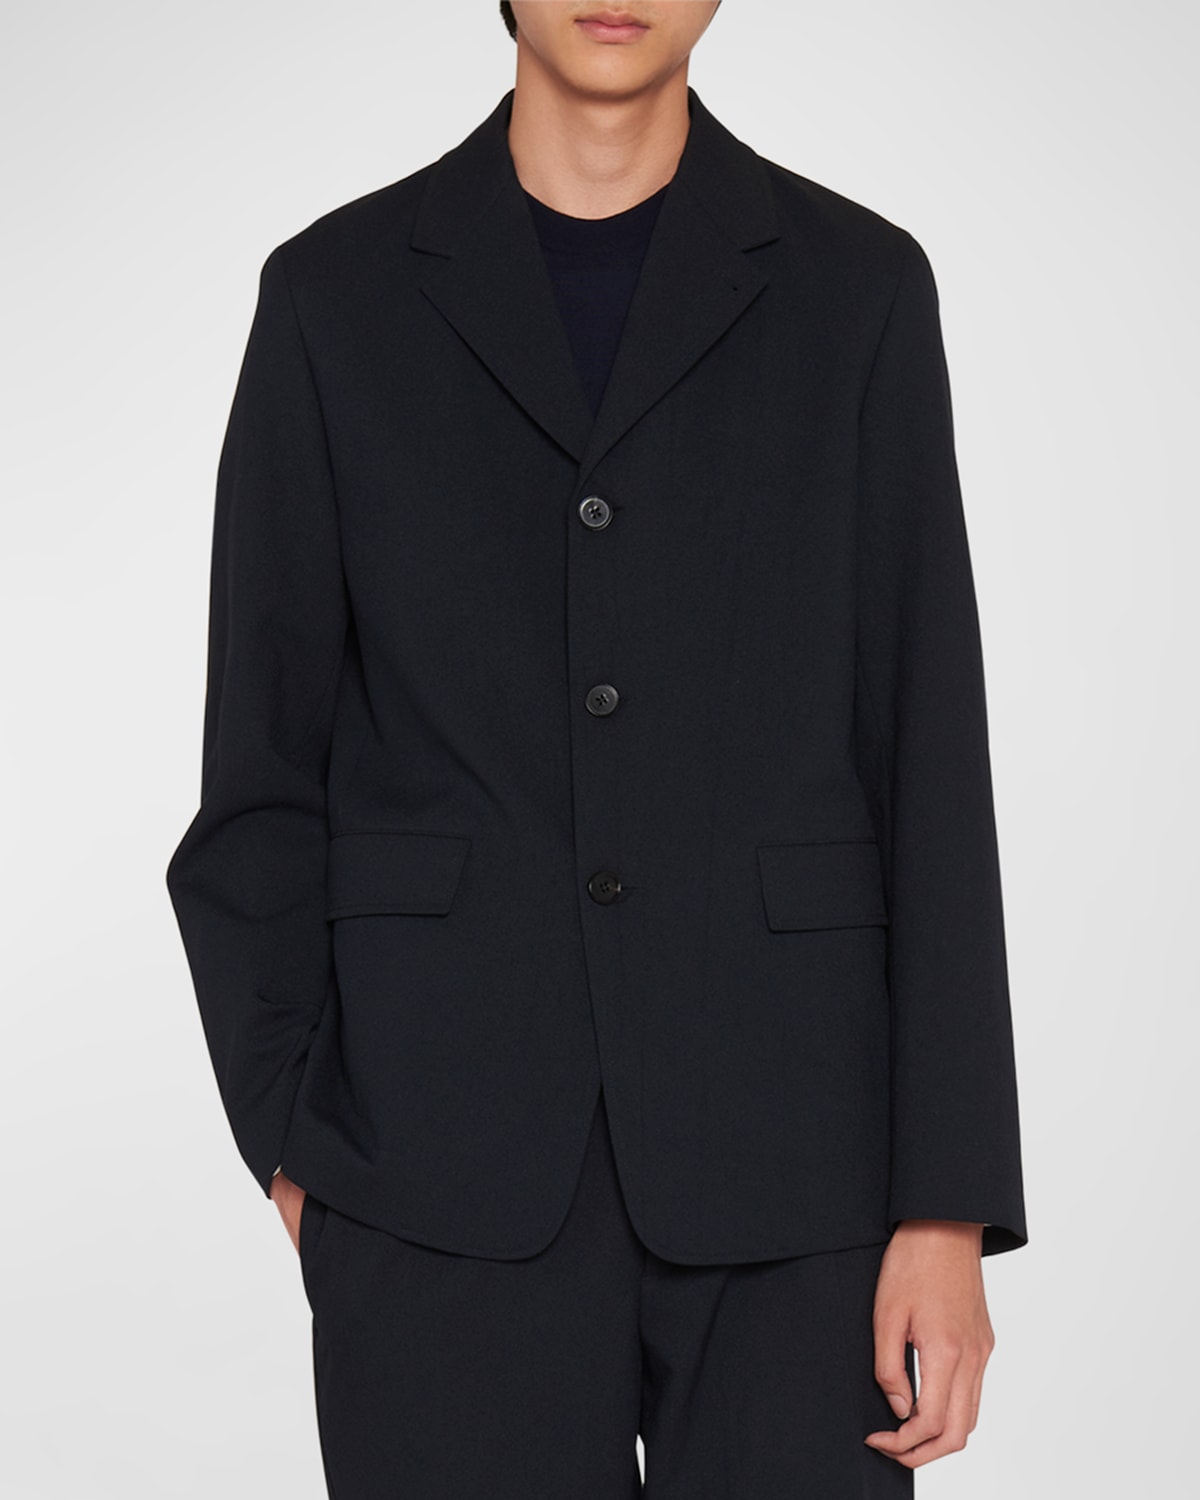 Men's Solid Suit Jacket